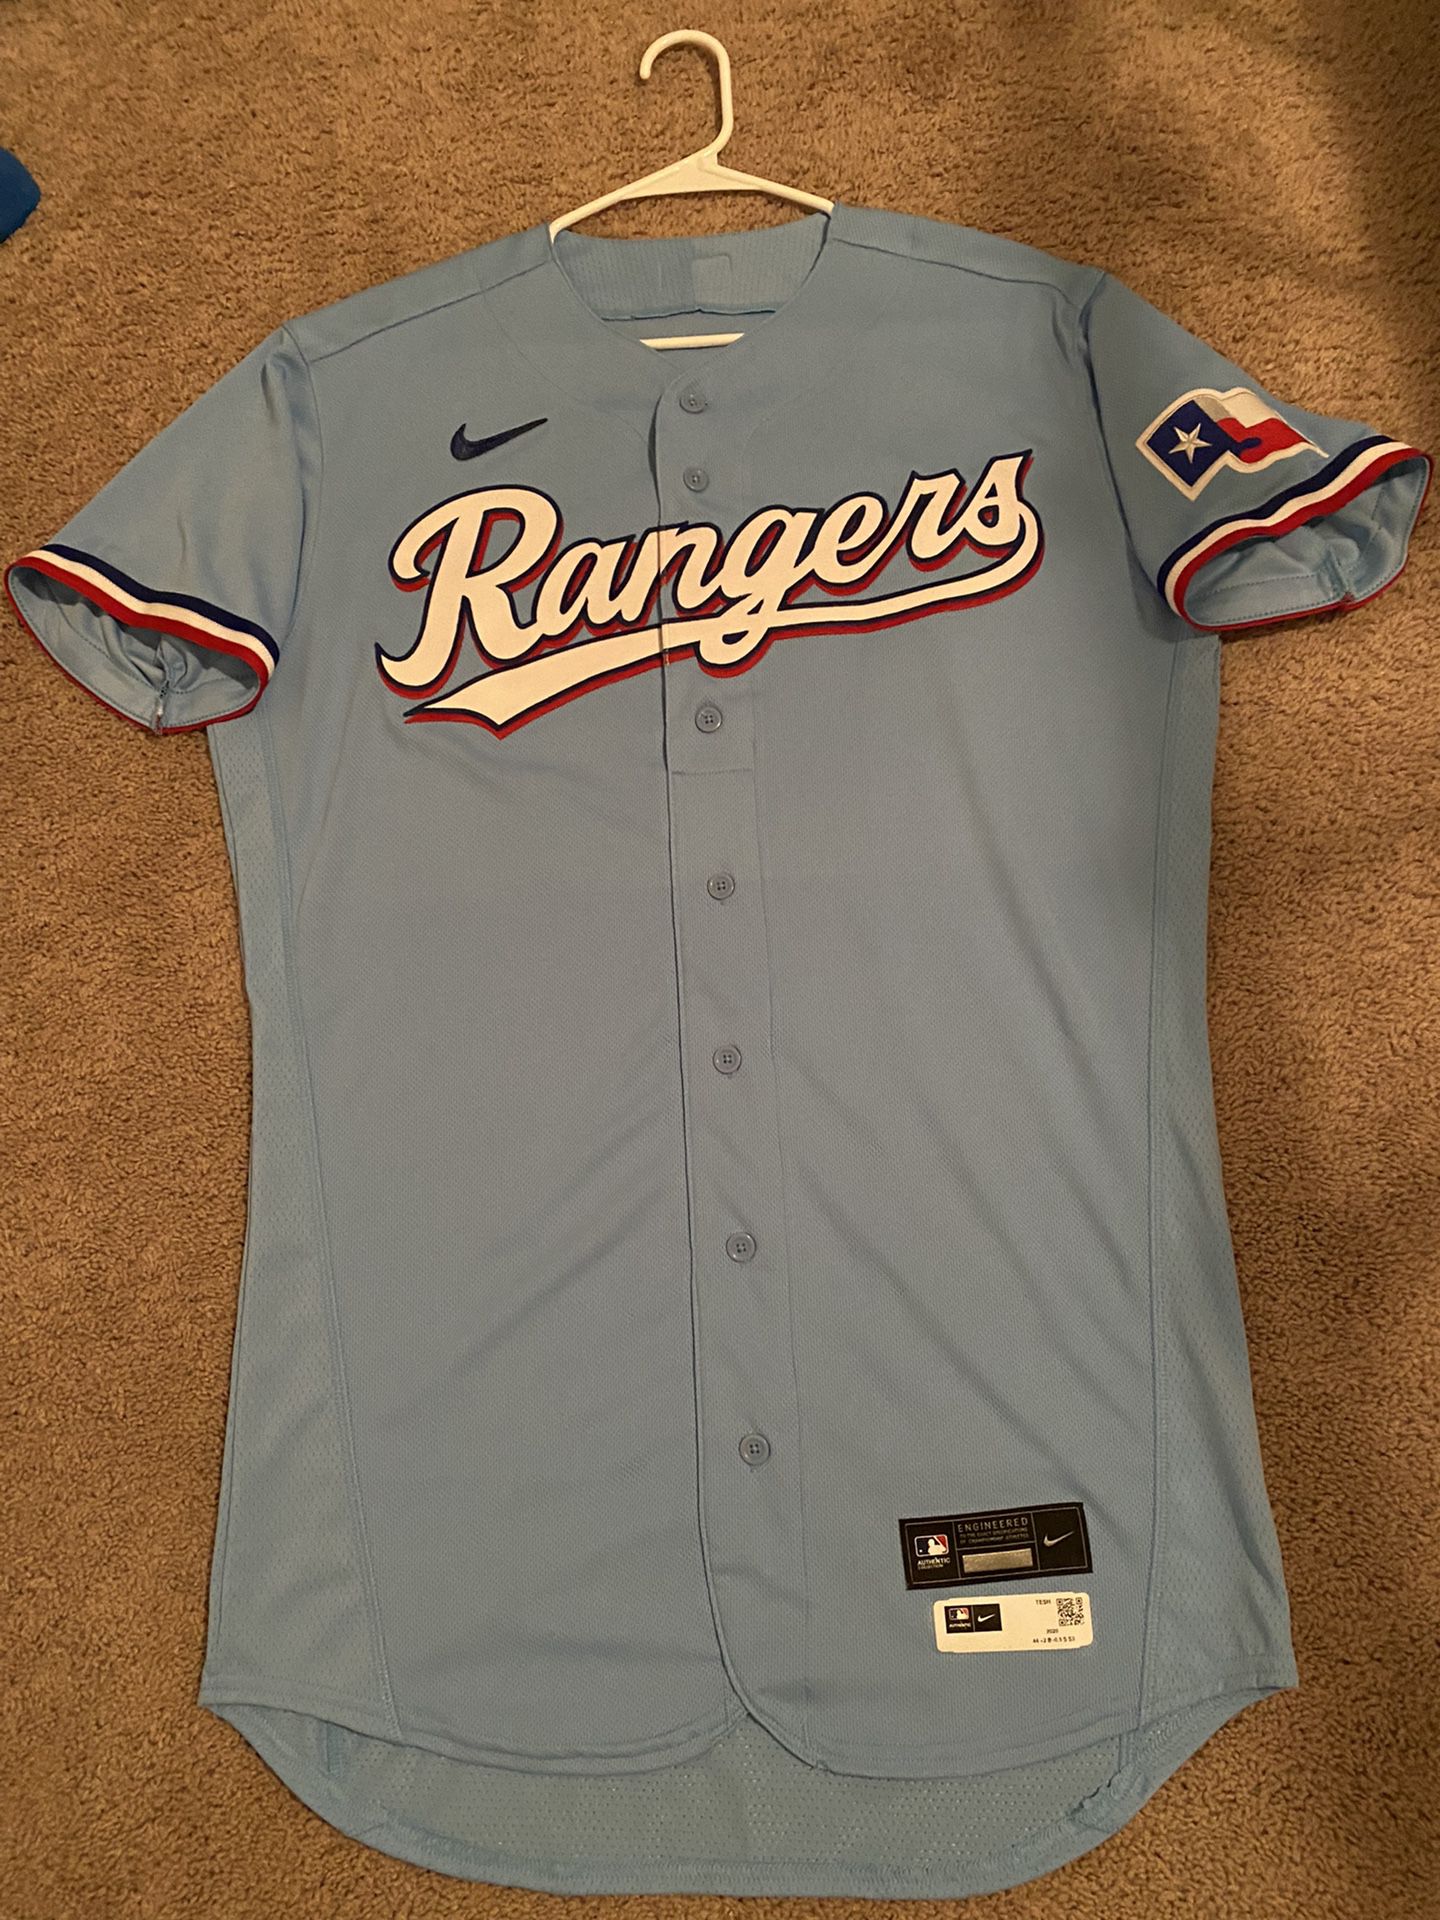 texas rangers light blue jersey